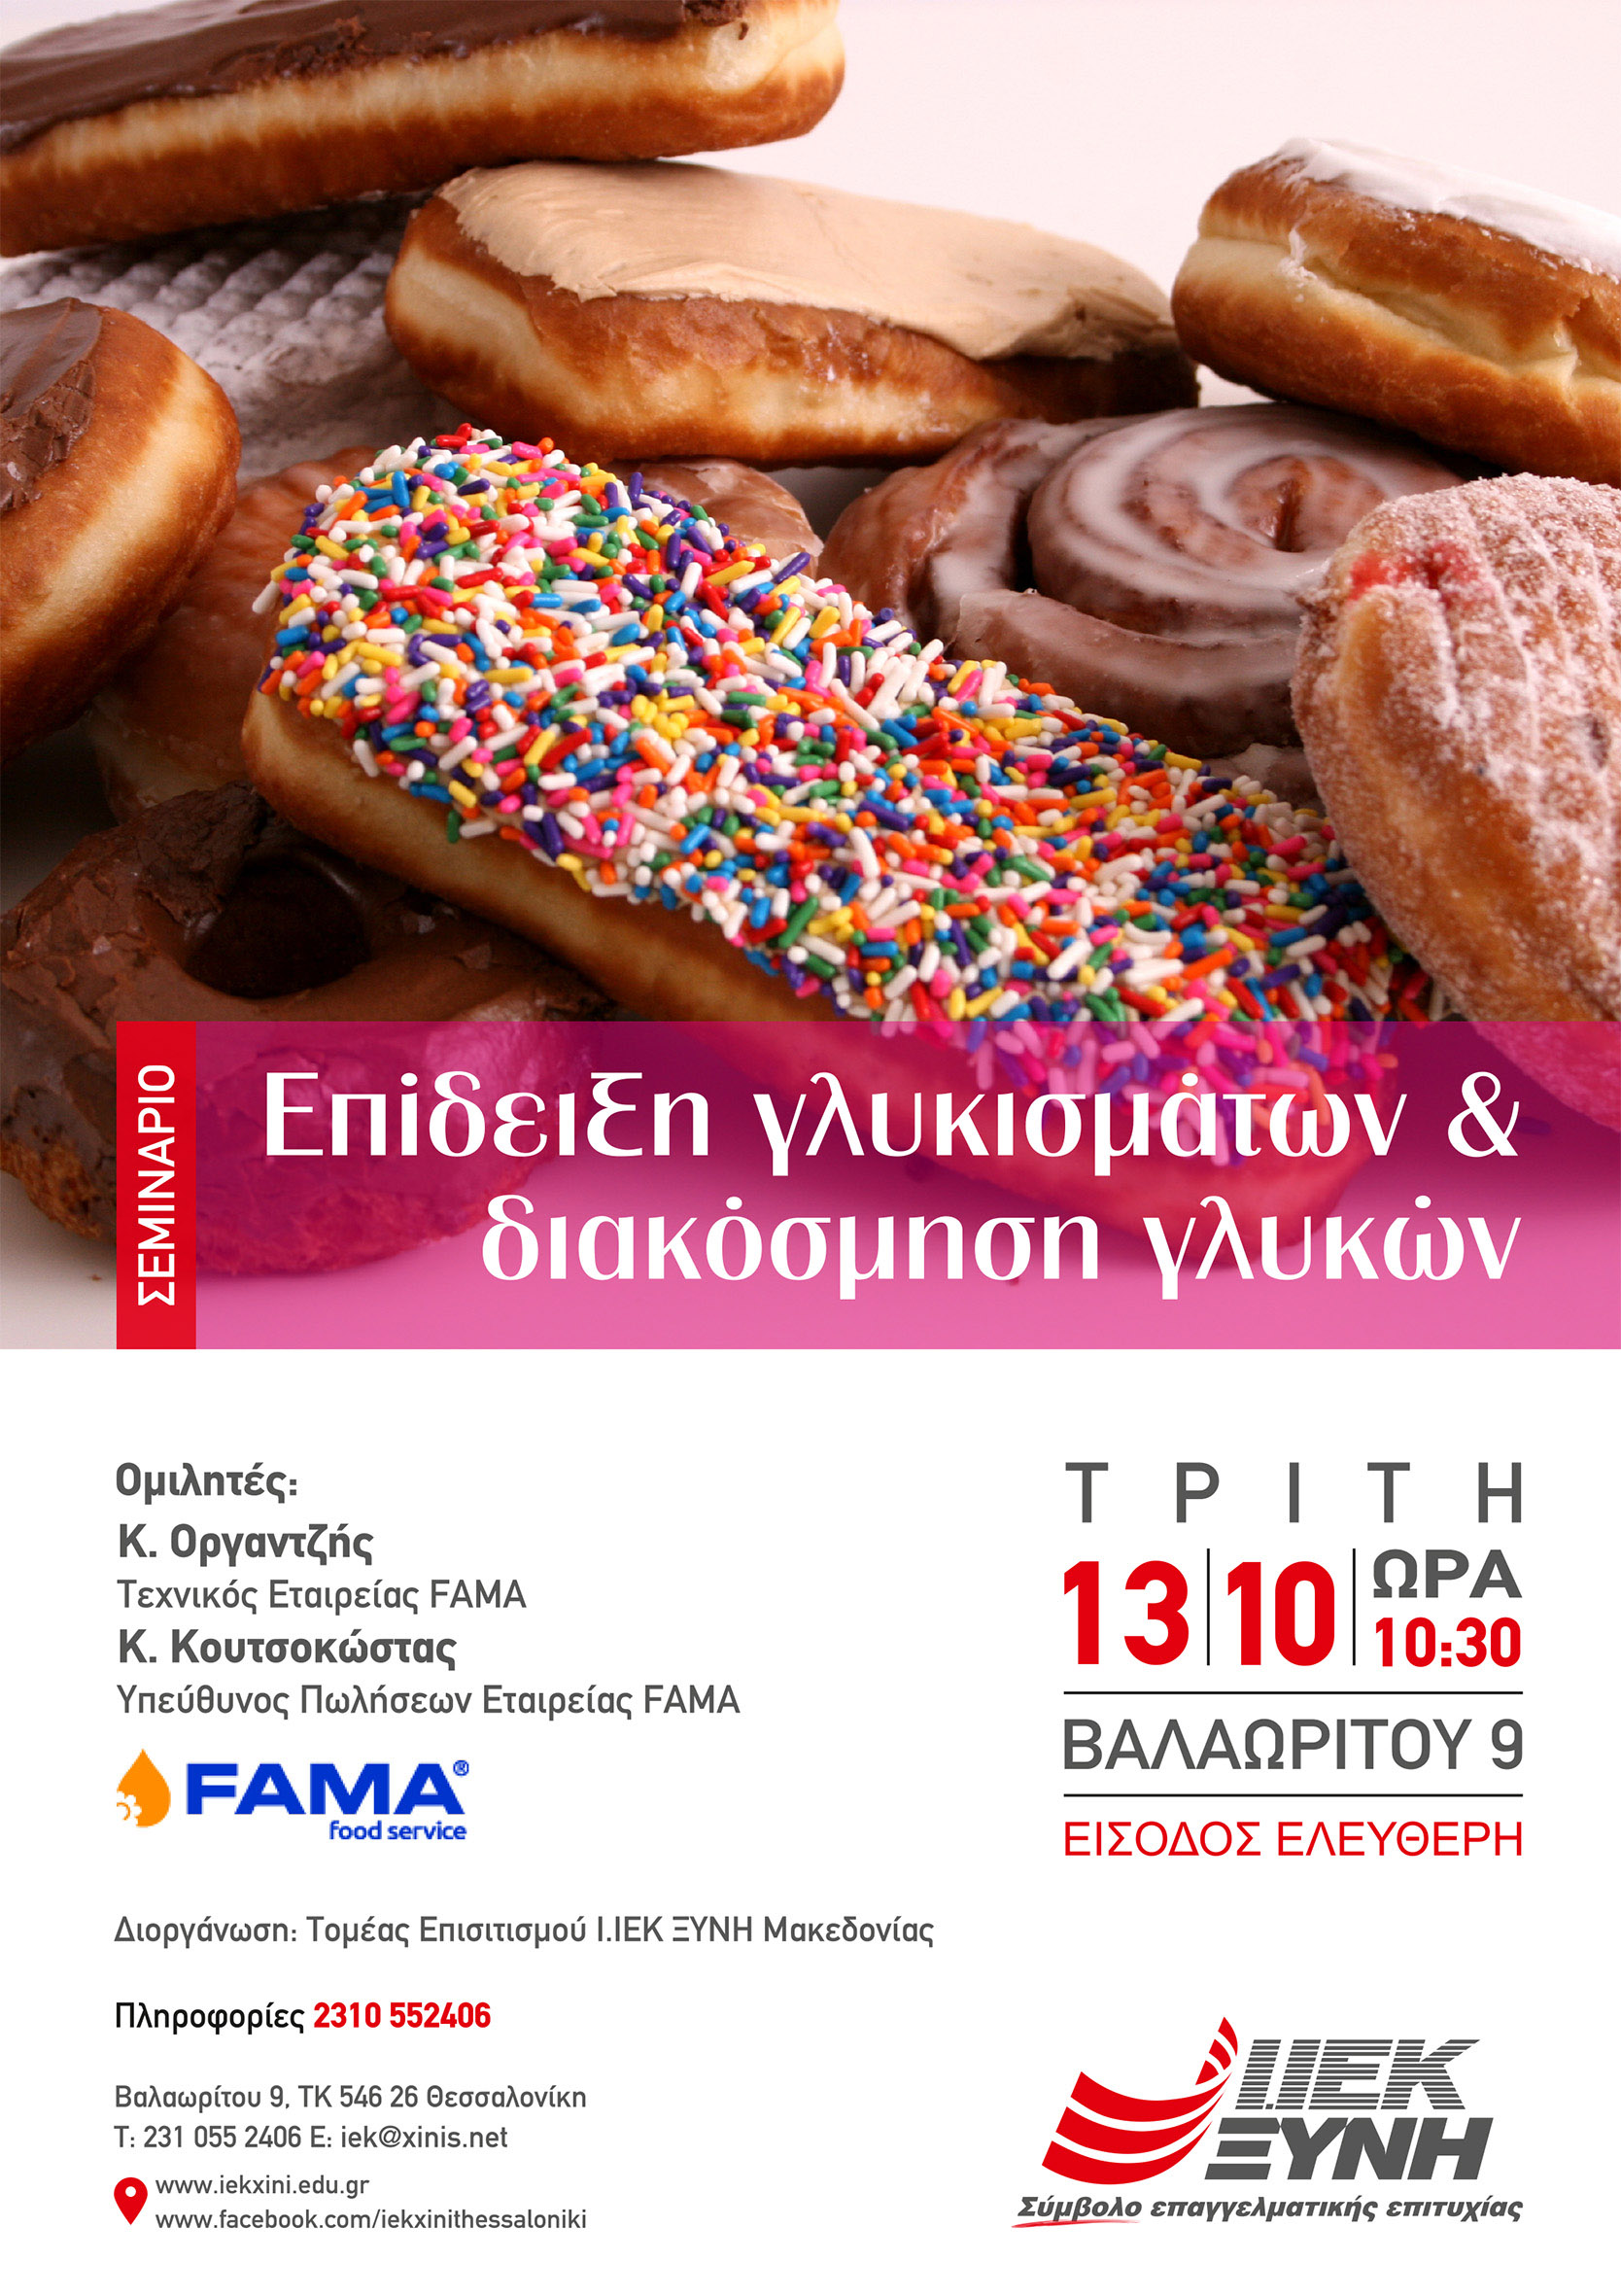 Επίδειξη γλυκισμάτων & διακόσμηση γλυκών – Η πιο γλυκιά υποδοχή περιμένει τους σπουδαστές Α’ εξαμήνου της ειδικότητας Αρτοποιίας – Ζαχαροπλαστικής του ΙΕΚ ΞΥΝΗ Μακεδονίας!